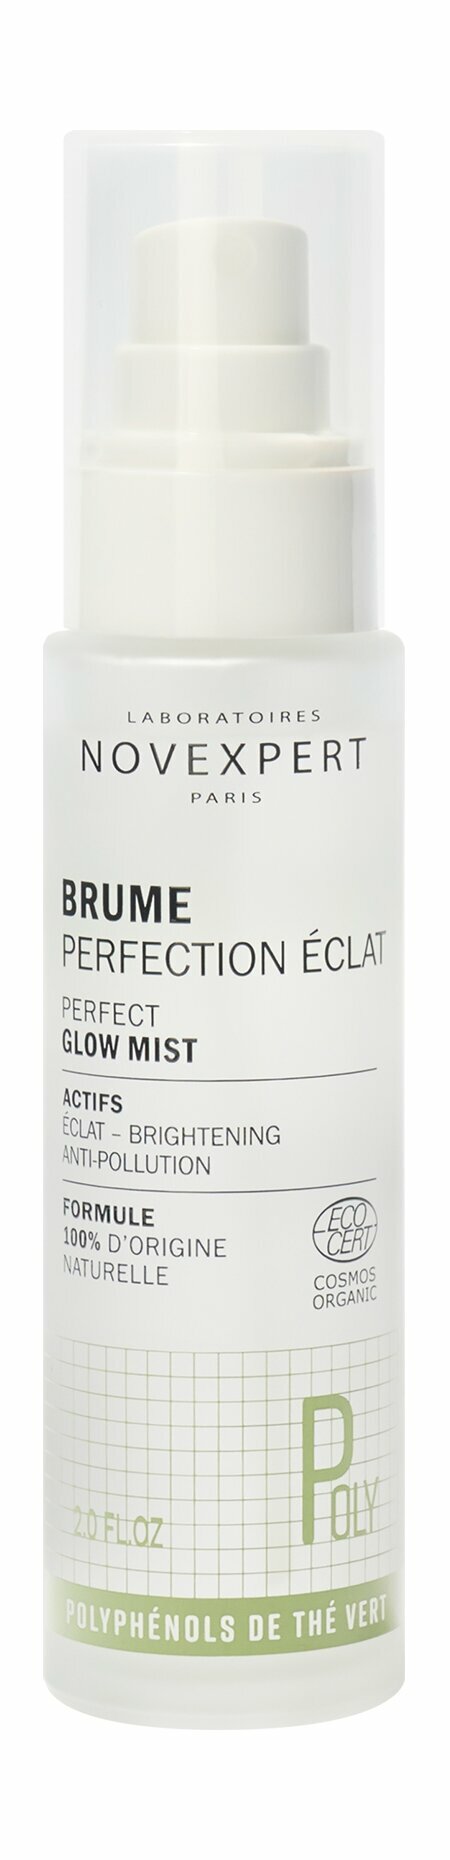 NOVEXPERT Perfect Glow Mist Дымка для сияния лица, 60 мл